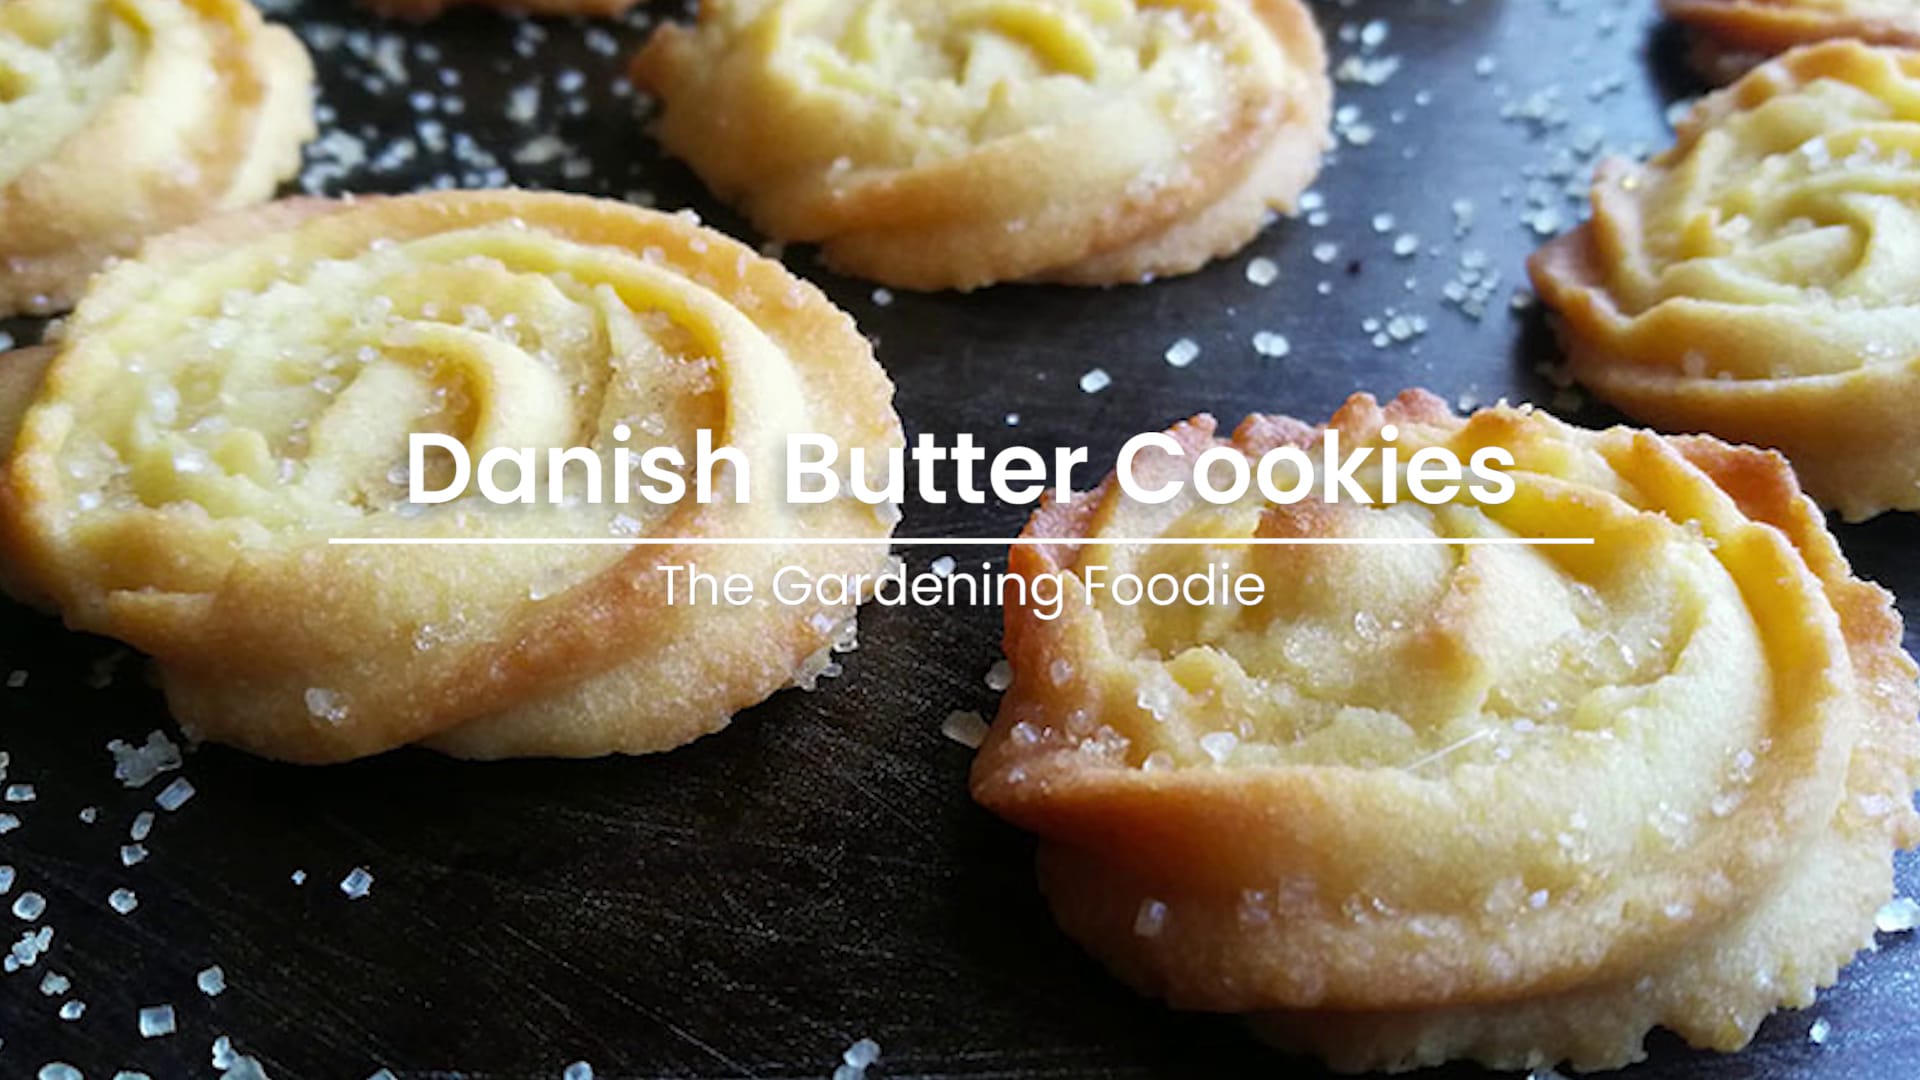 Danish Butter Cookies - My Cookie Journey